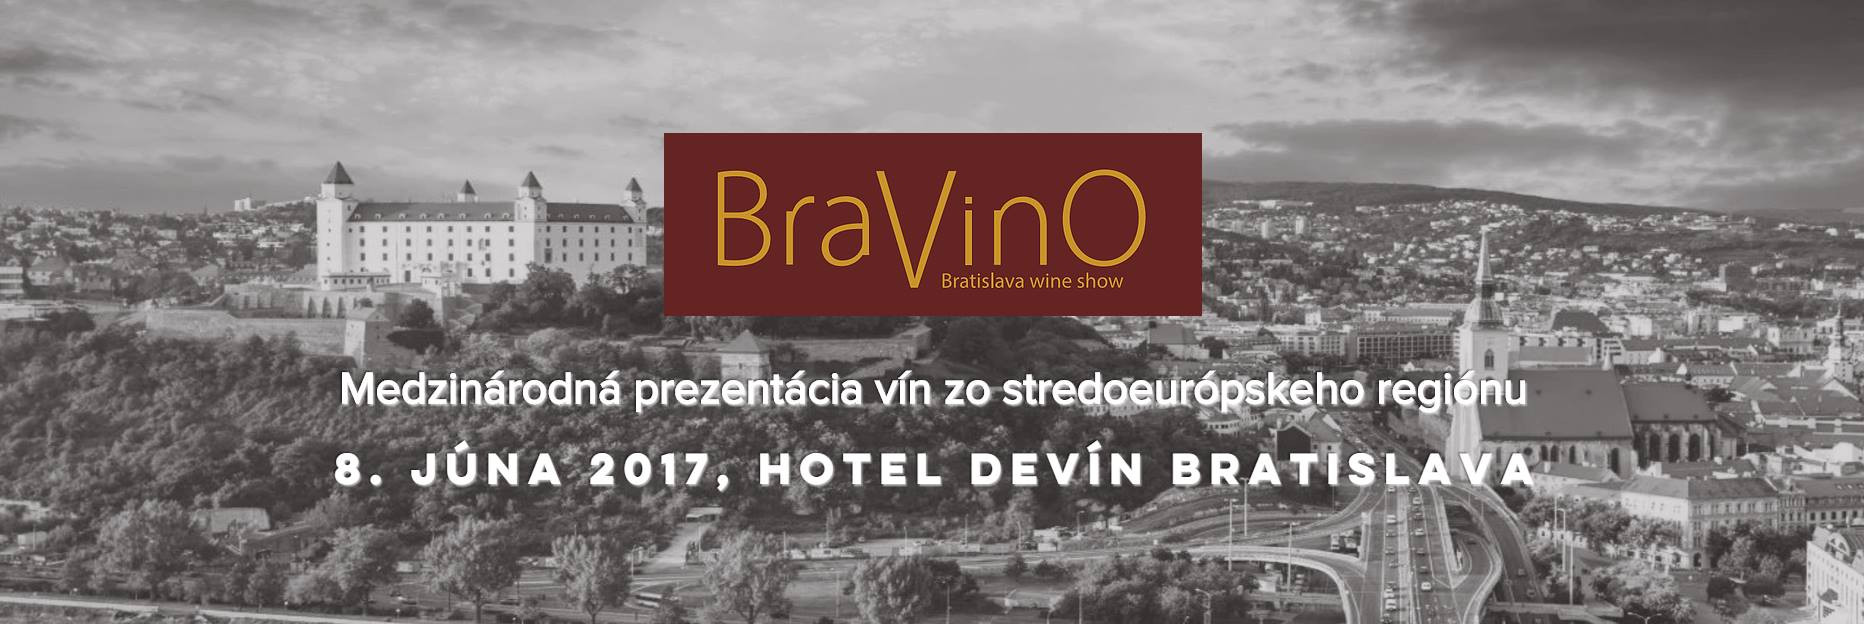 BraVinO - Bratislava Wine Show (8.6.2017)